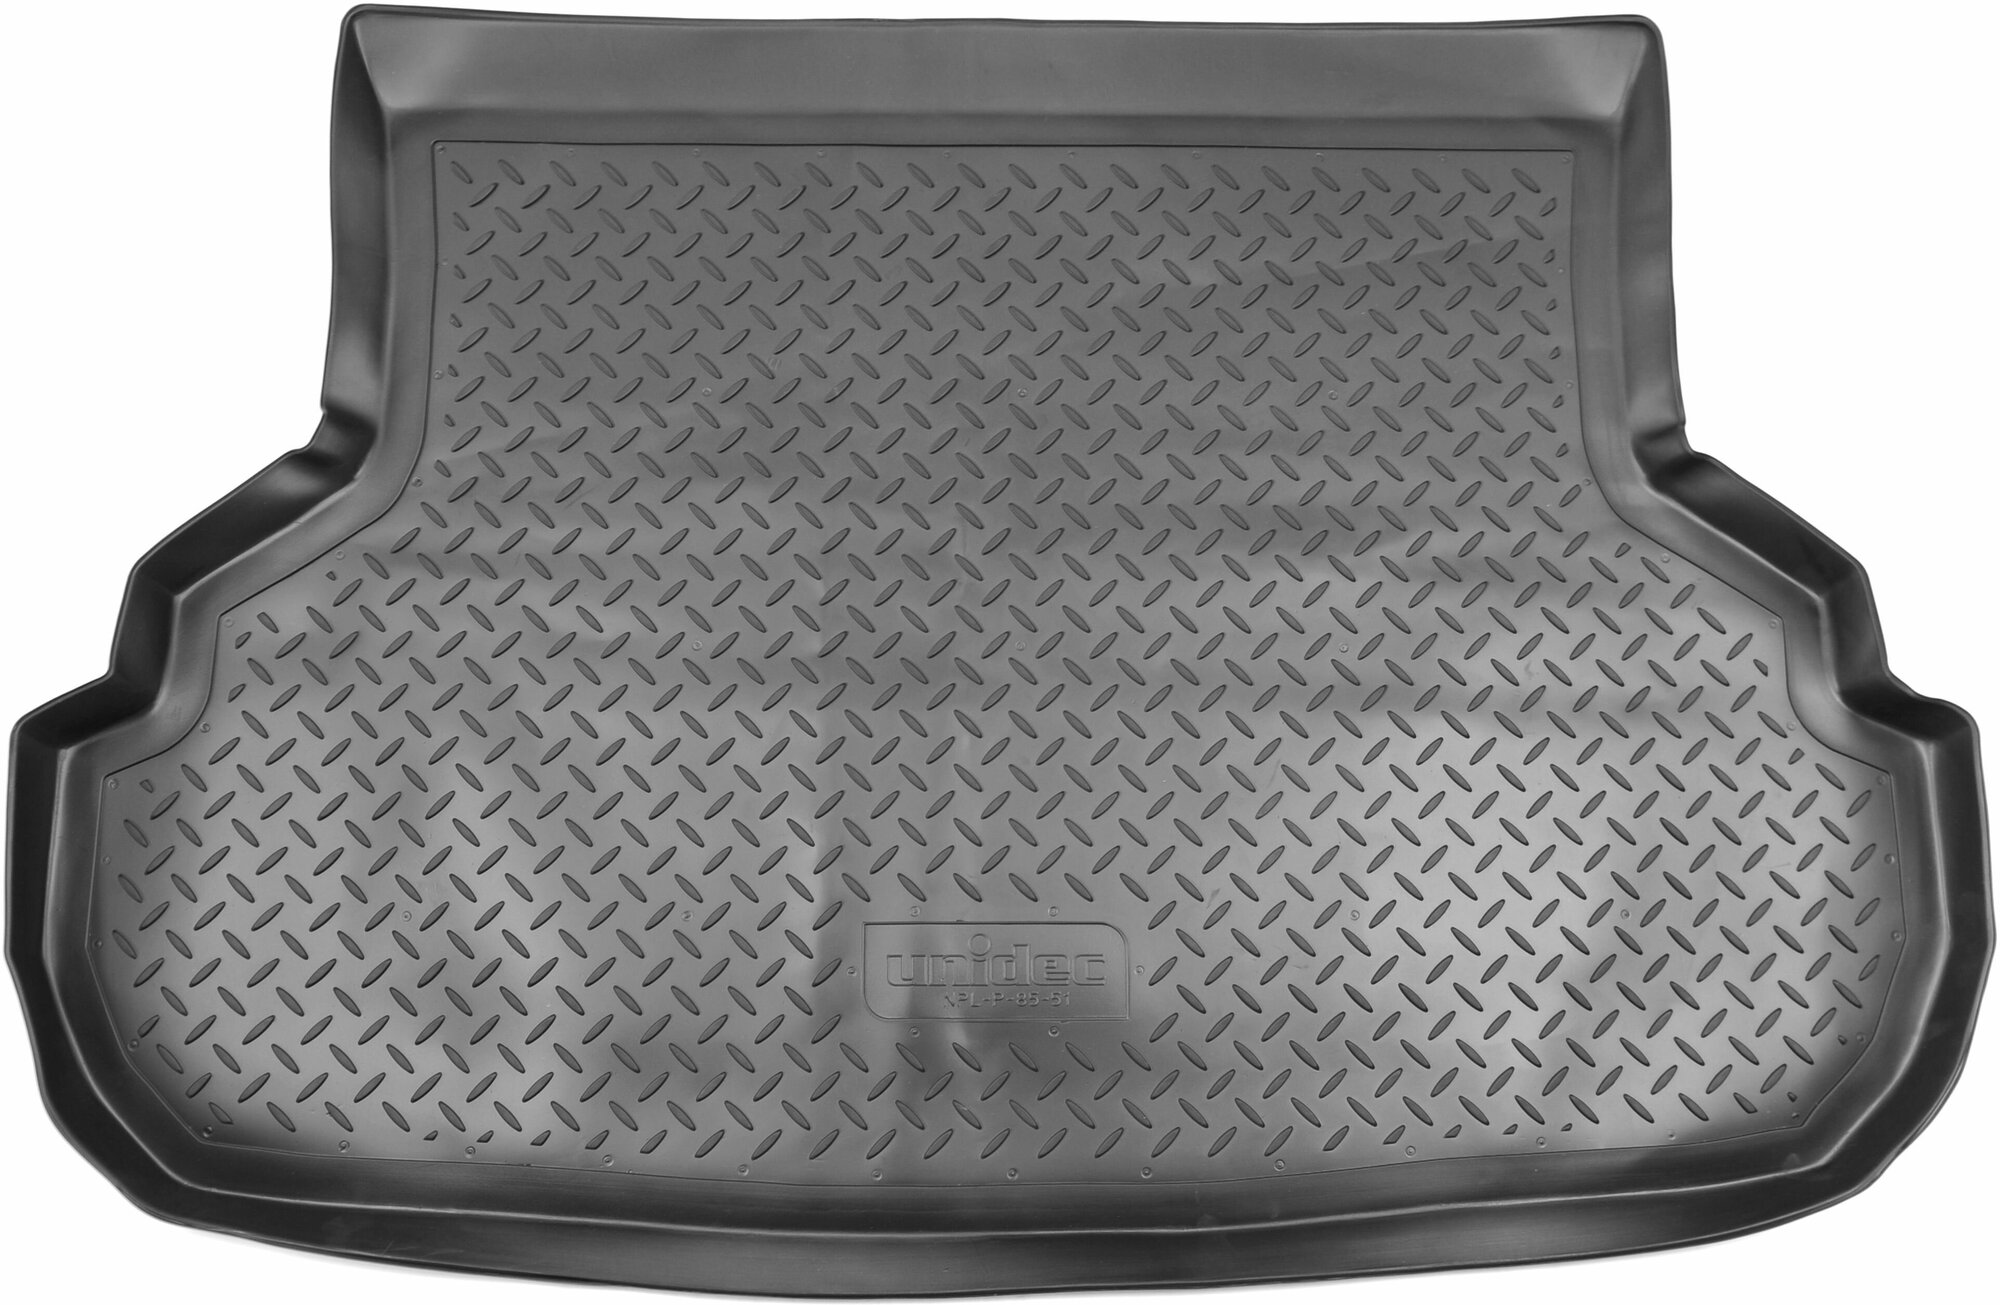 Коврик багажника (полиуретан) для Suzuki SX4 SD- седан (2007-) (NPL-P-85-51)